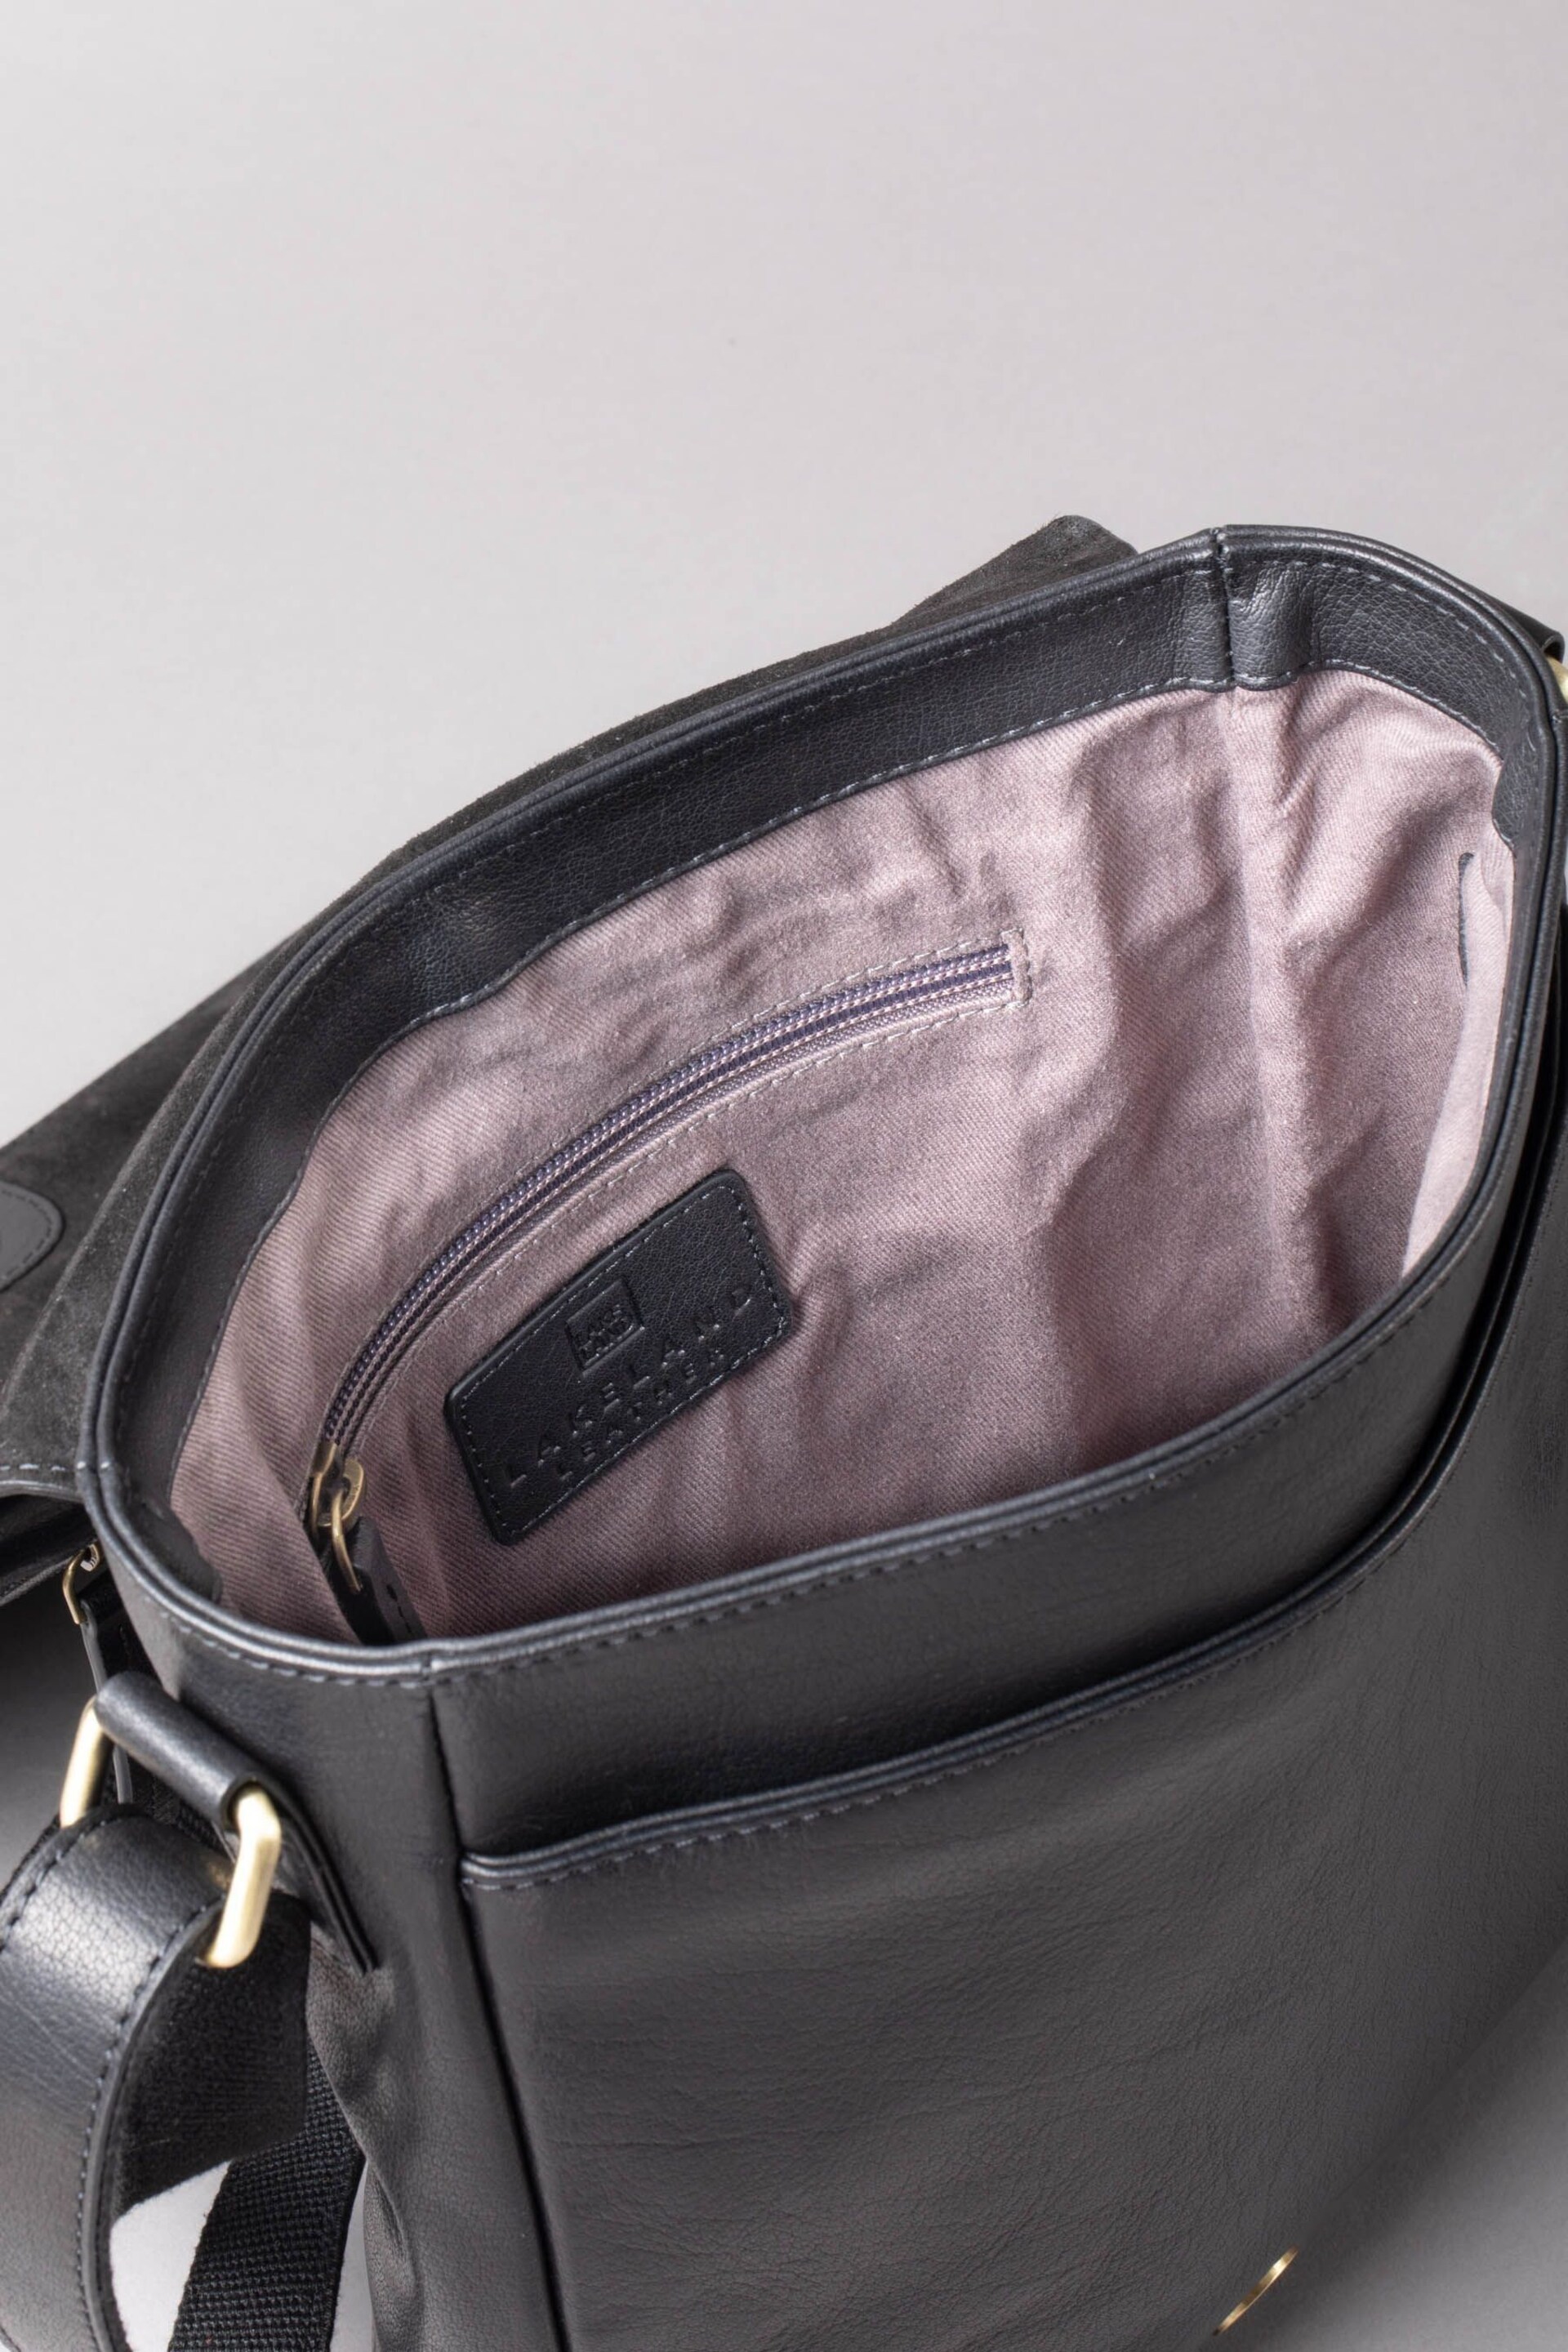 Lakeland Leather Keswick Medium Leather Messenger Bag In - Image 7 of 7